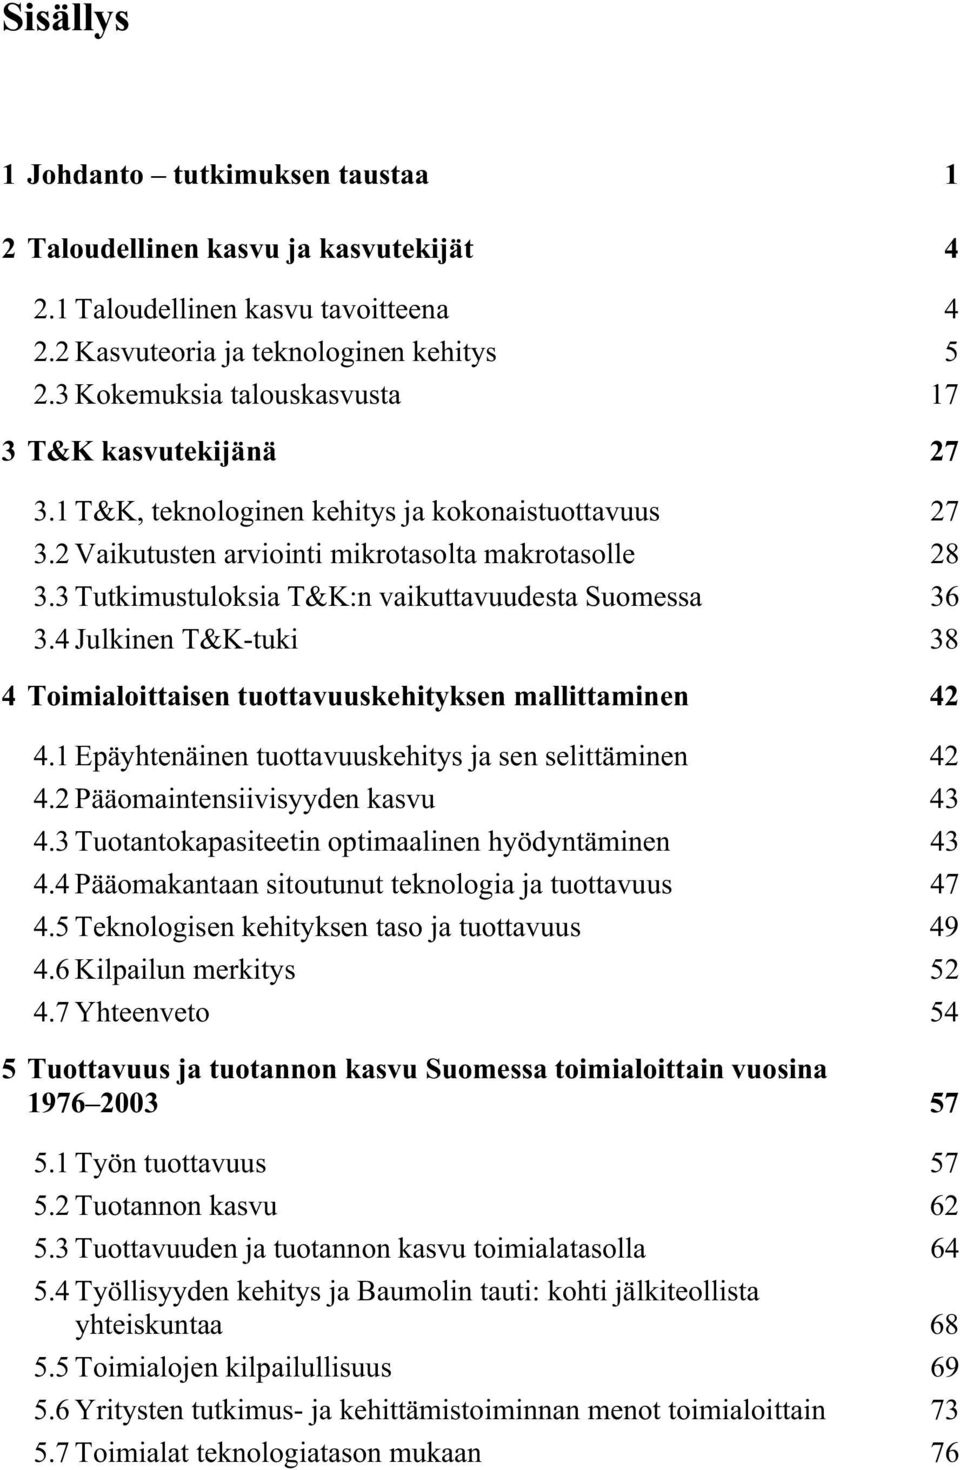 3 Tutkimustuloksia T&K:n vaikuttavuudesta Suomessa 36 3.4 Julkinen T&K-tuki 38 4 Toimialoittaisen tuottavuuskehityksen mallittaminen 42 4.1 Epäyhtenäinen tuottavuuskehitys ja sen selittäminen 42 4.